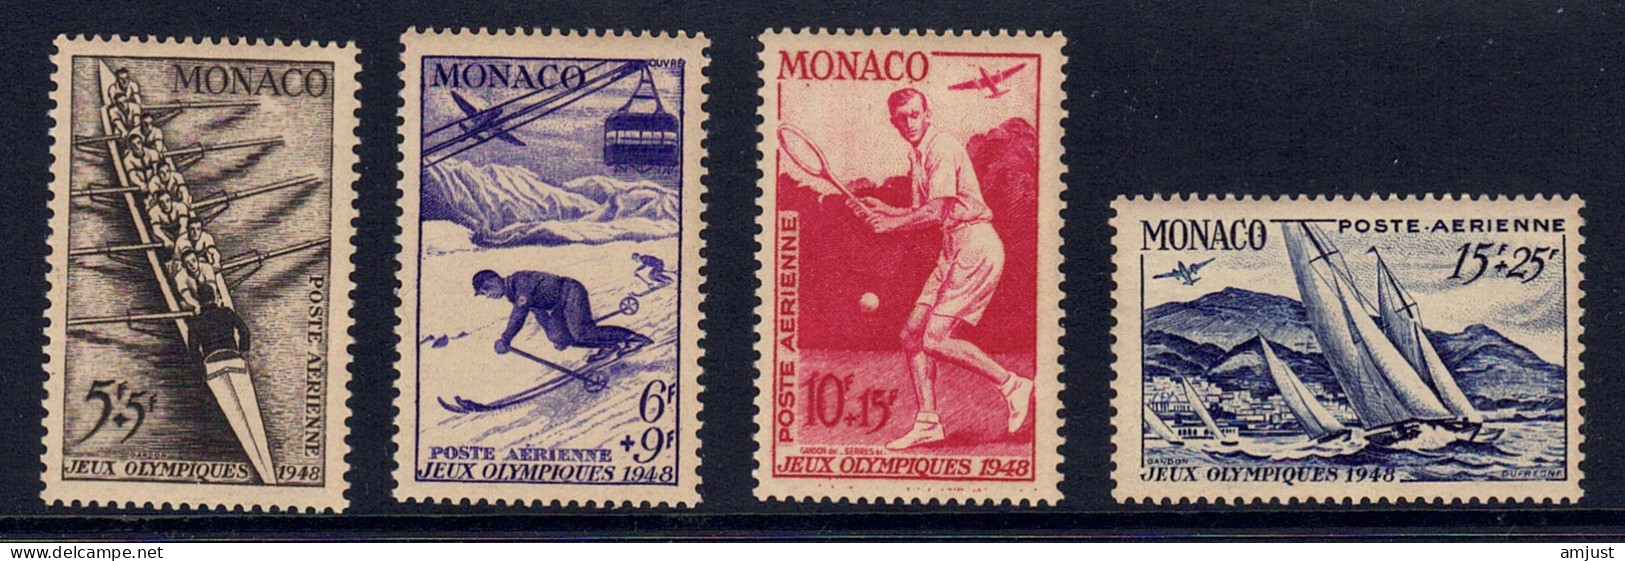 Monaco // Poste Aérienne1948  // Jeux Olympiques De Londres  Timbres Neufs** MNH  No. Y&T 32 à 35 - Luftfahrt